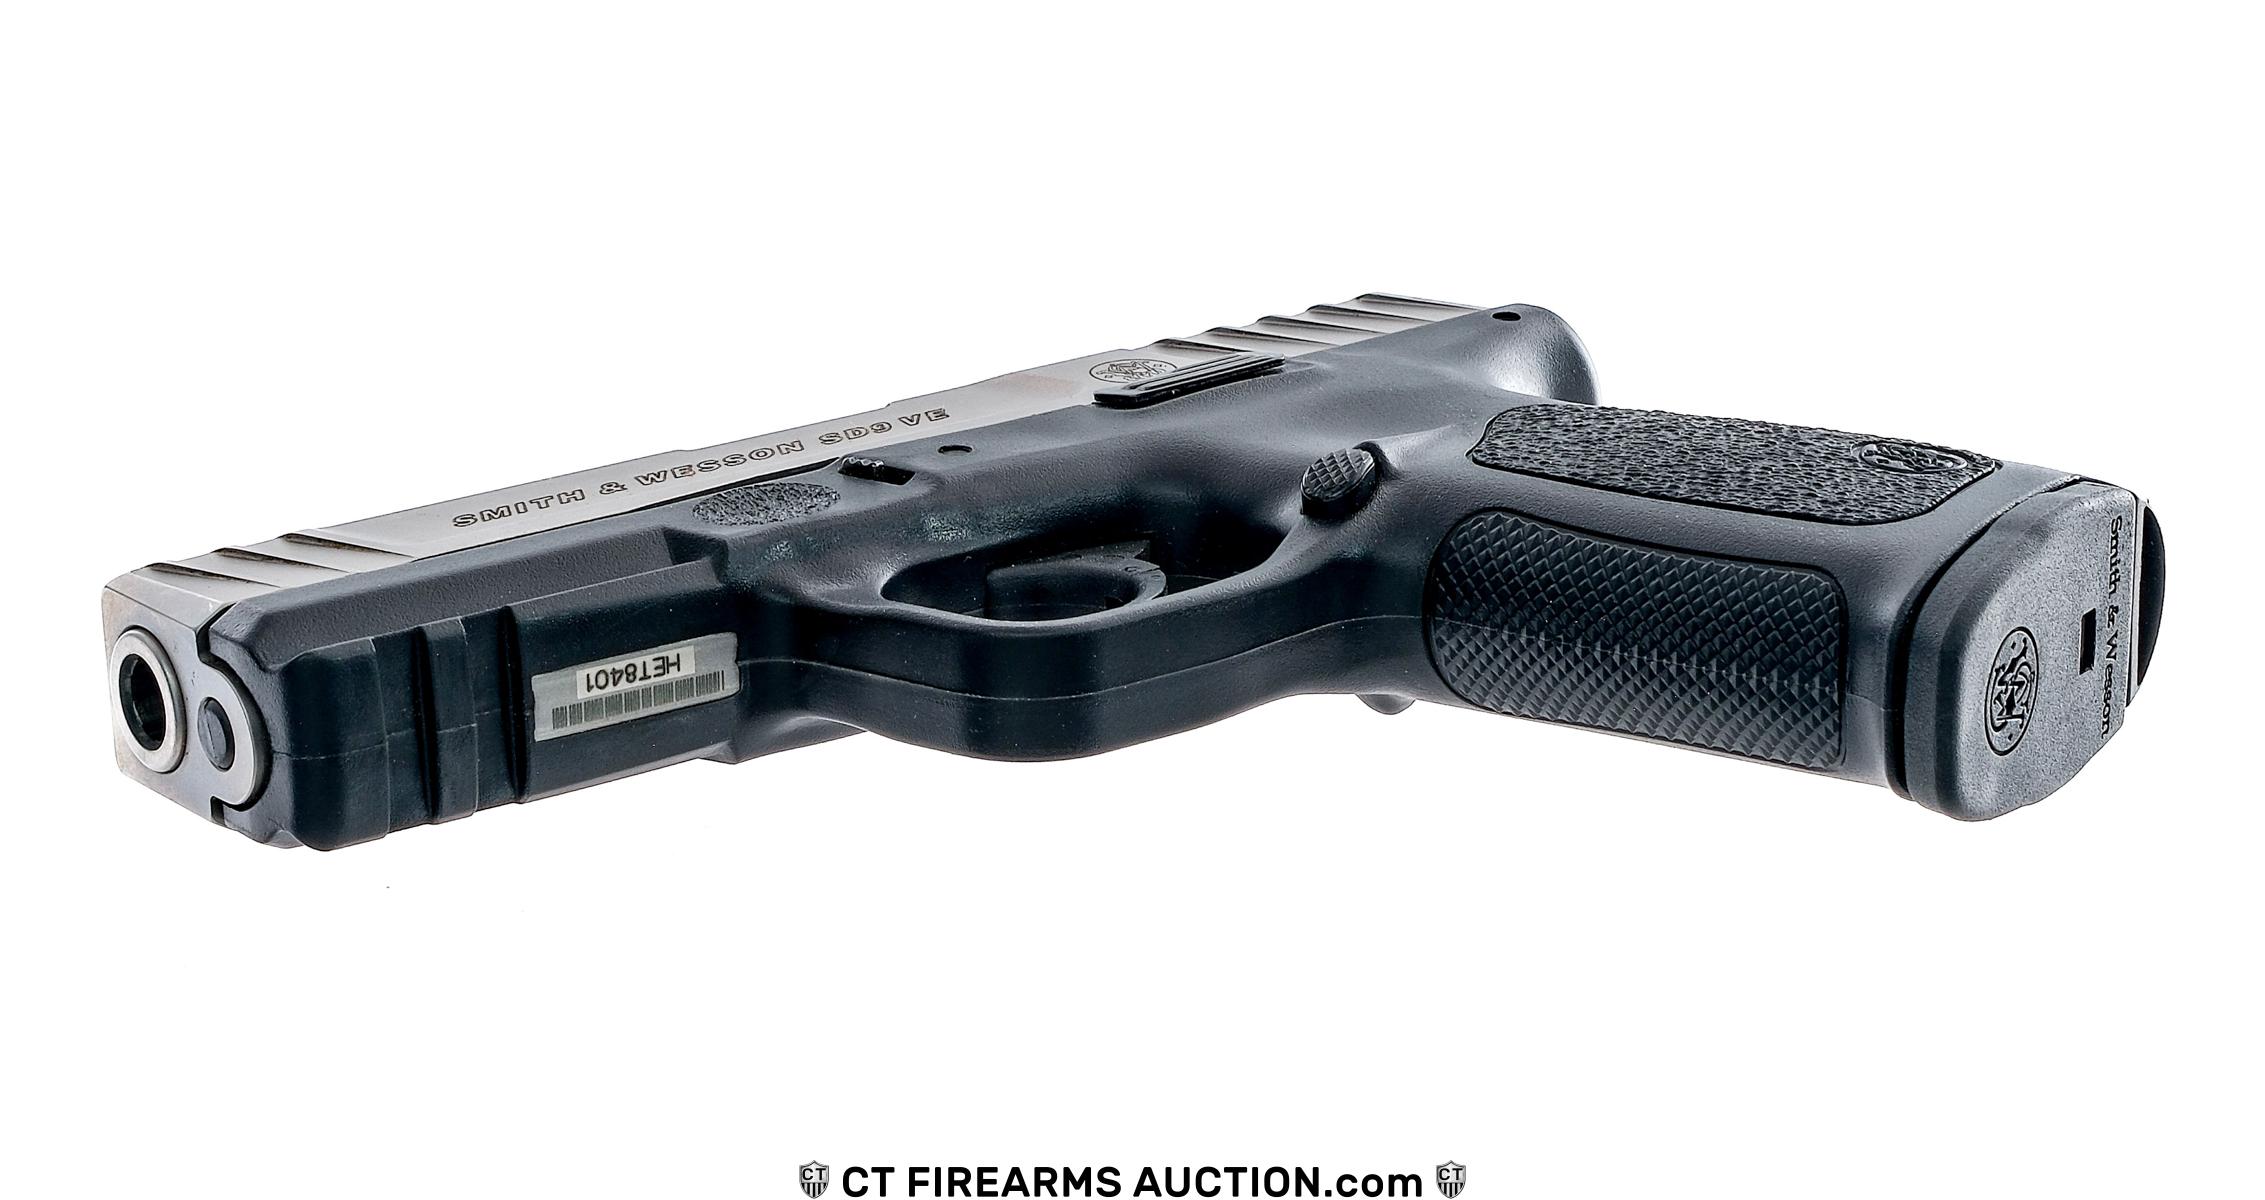 Smith & Wesson SD9 VE 9mm Semi Auto Pistol